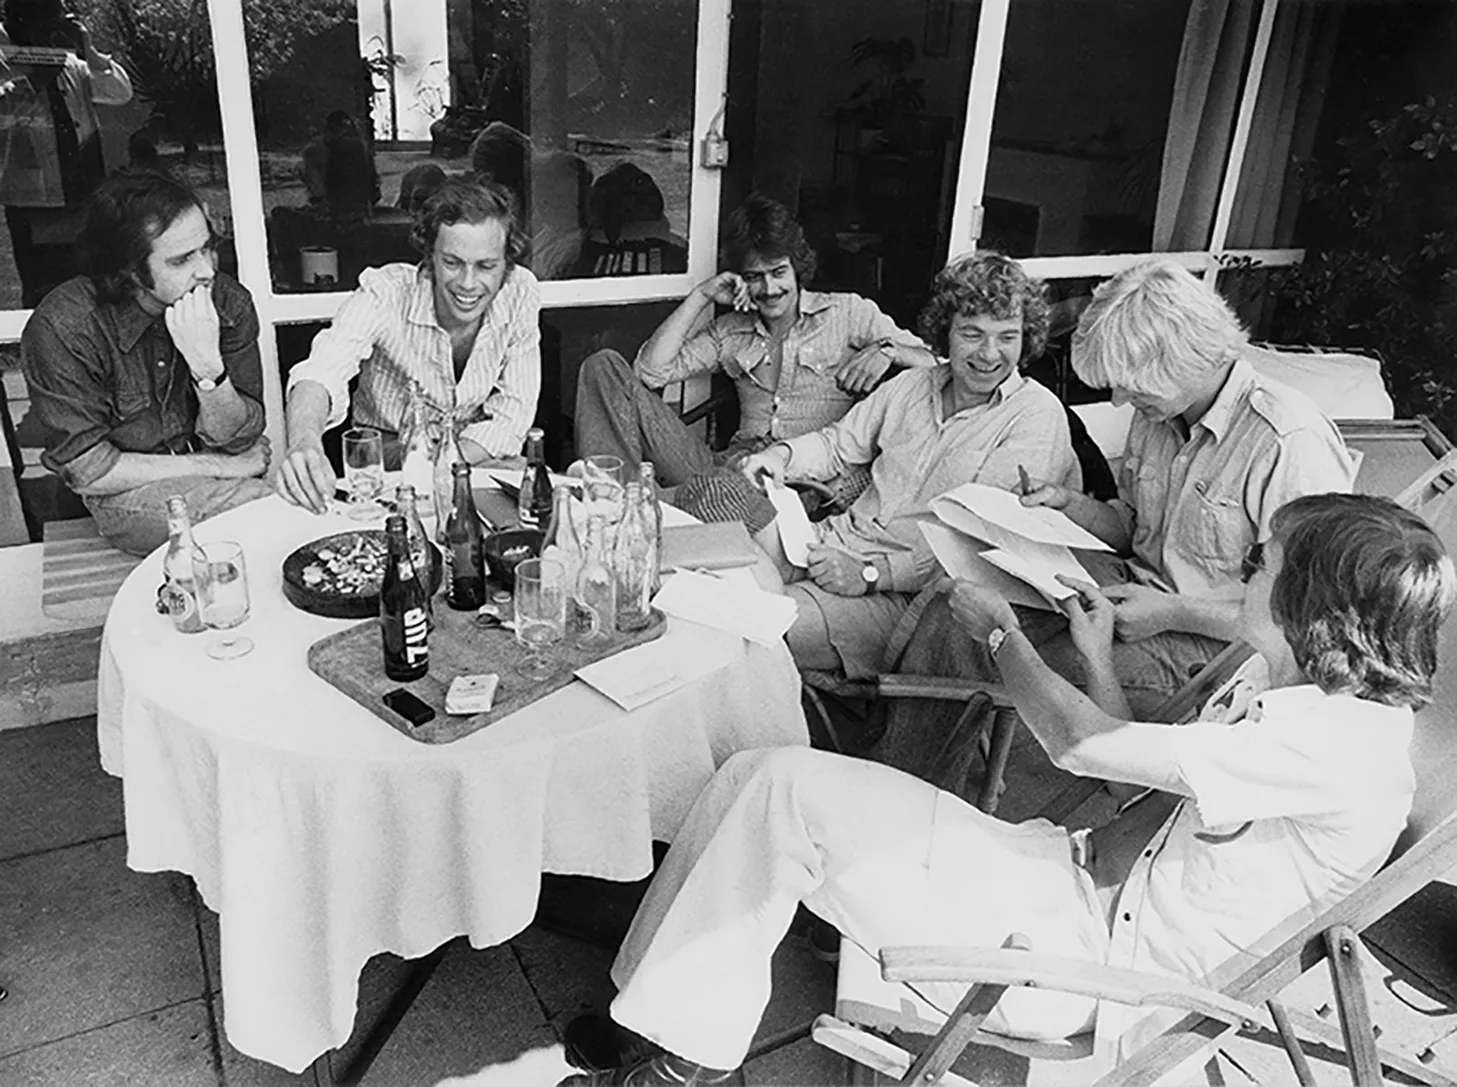 Shu-bi-dua sommeren 1978: Claus Asmussen, Bosse Hall Christensen, Kim Daugaard, Michael Bundesen, Jens Tage Nielsen og Michael Hardinger.